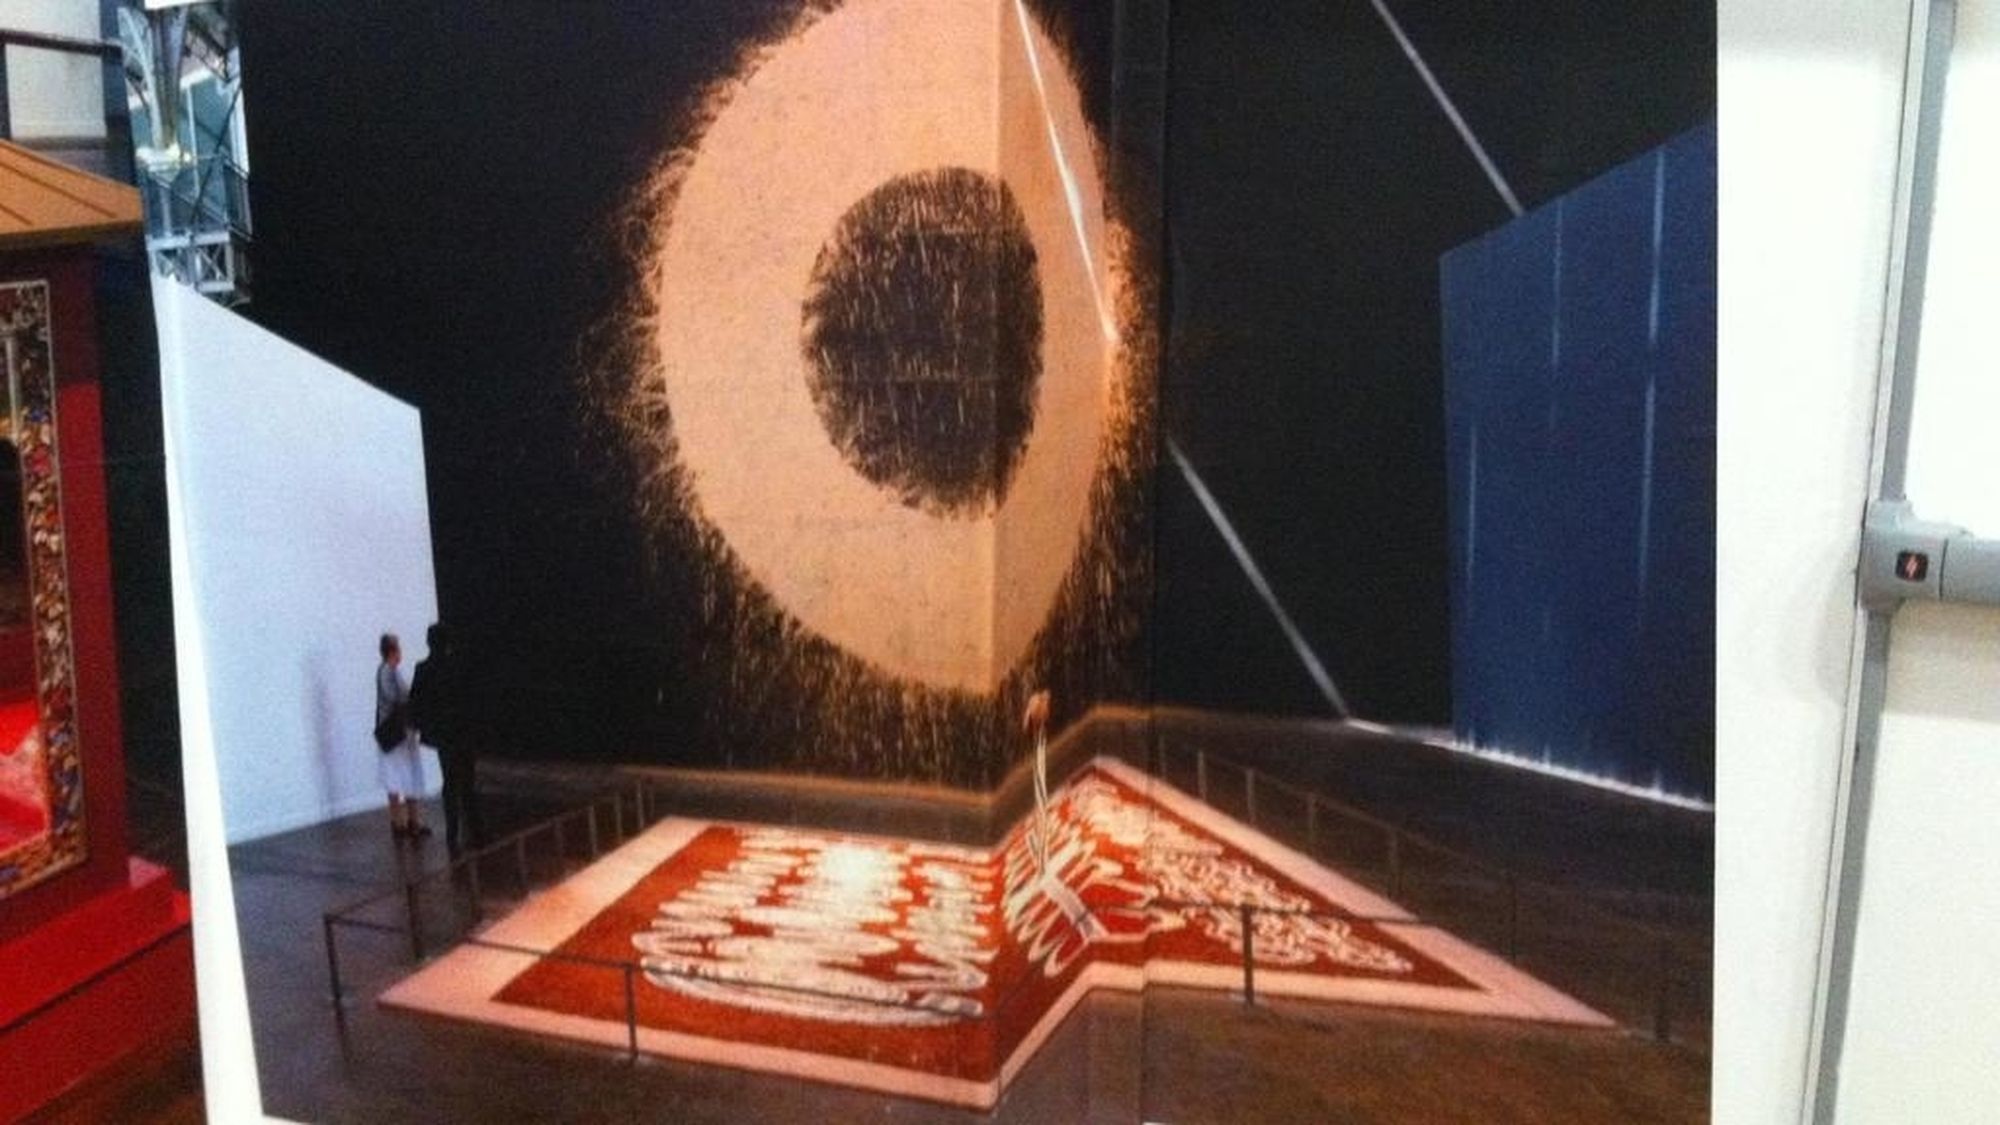 L'exposition de Bernhard Lüthi "Magiciens de la Terre" en 1989 à Paris a contribué à faire connaître l'art aborigène en Europe.